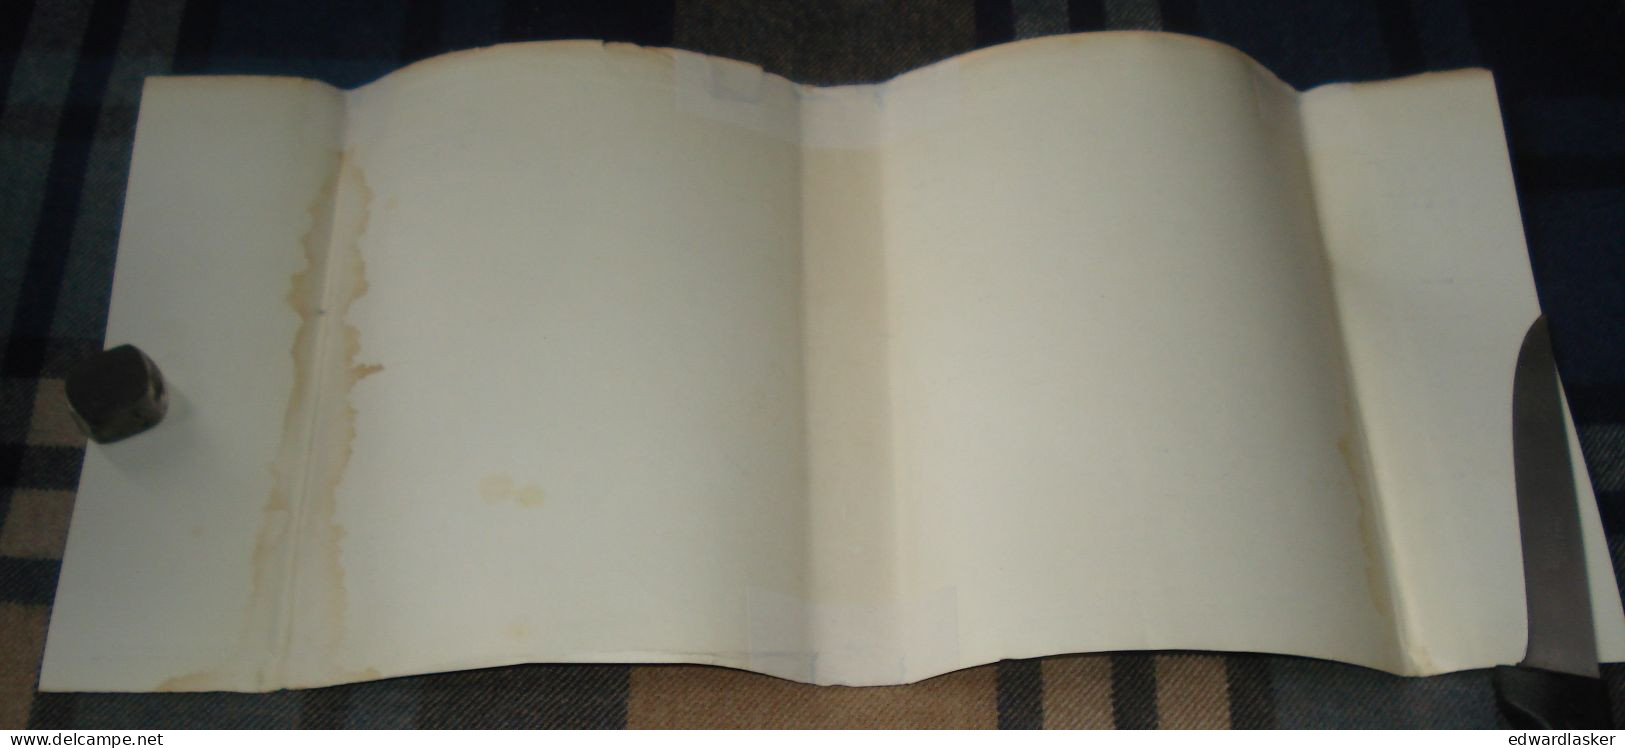 BIBLIOTHEQUE VERTE n°97 : Le livre de mon ami /Anatole France - jaquette 1957 [2]